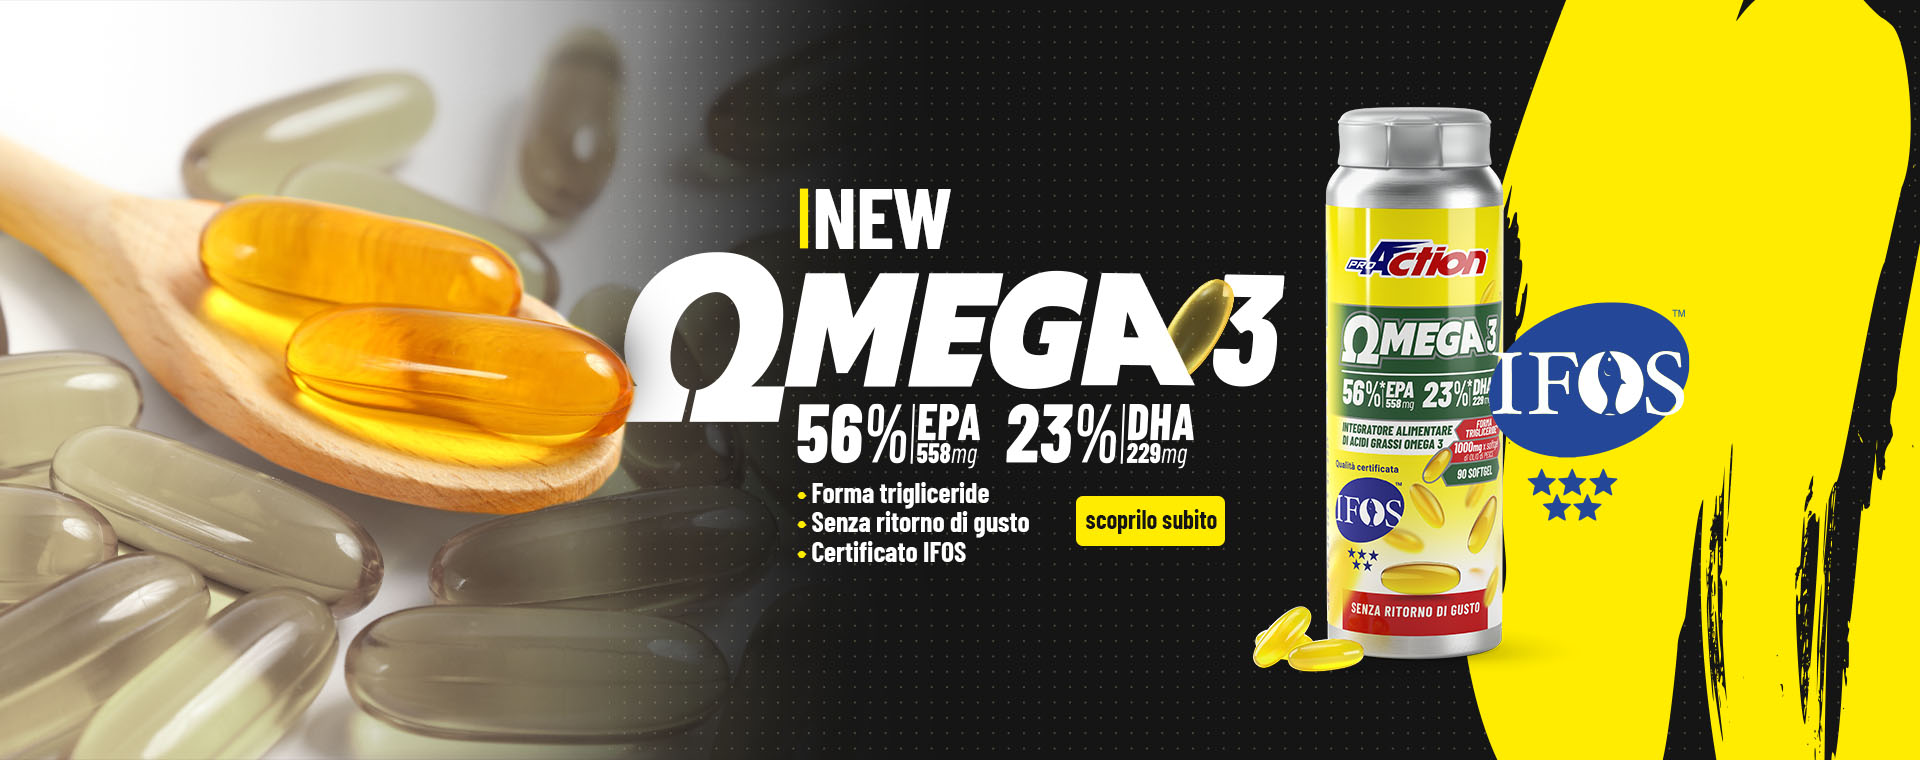 omega-3-new